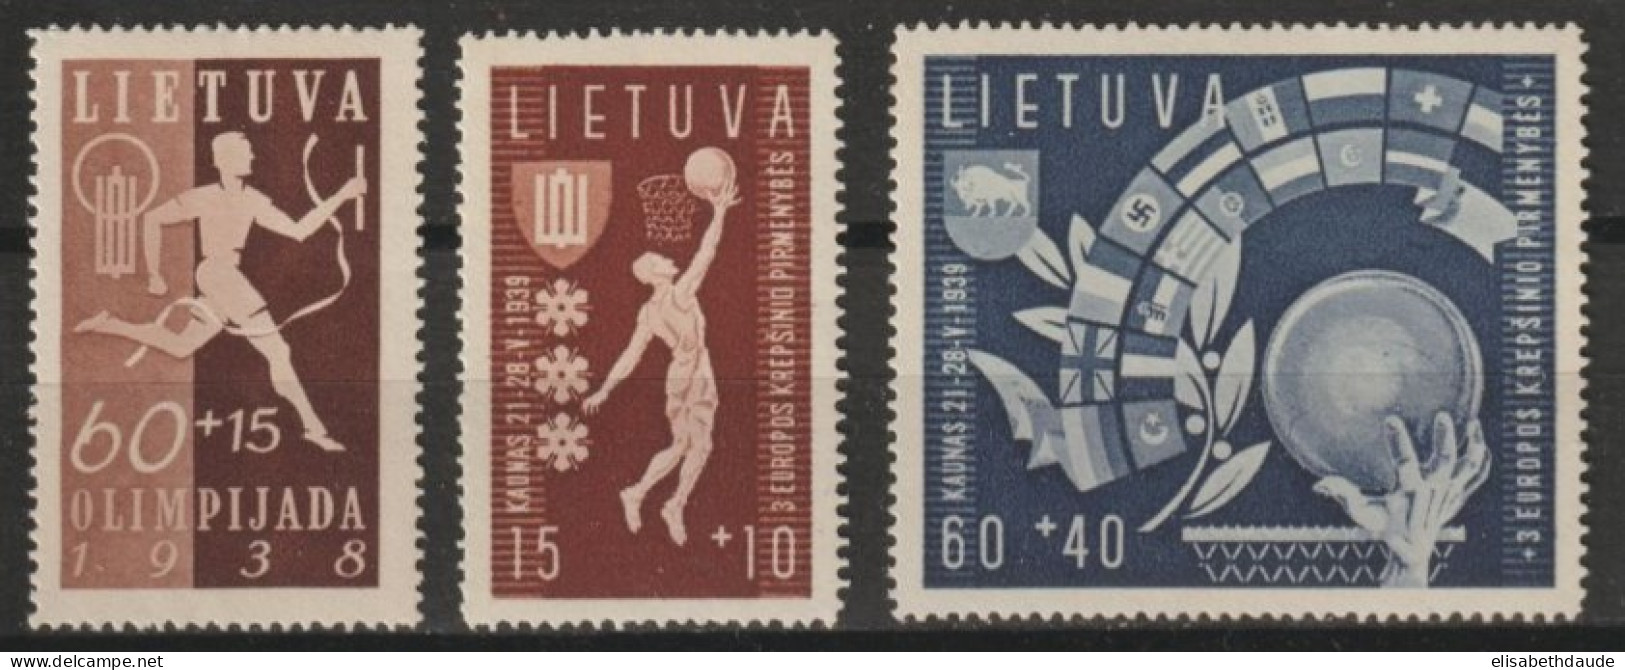 1939 - LITUANIE - SERIE COMPLETE BASKET N° 370/372  * MLH - COTE = 32.5 EUR. - Lituania